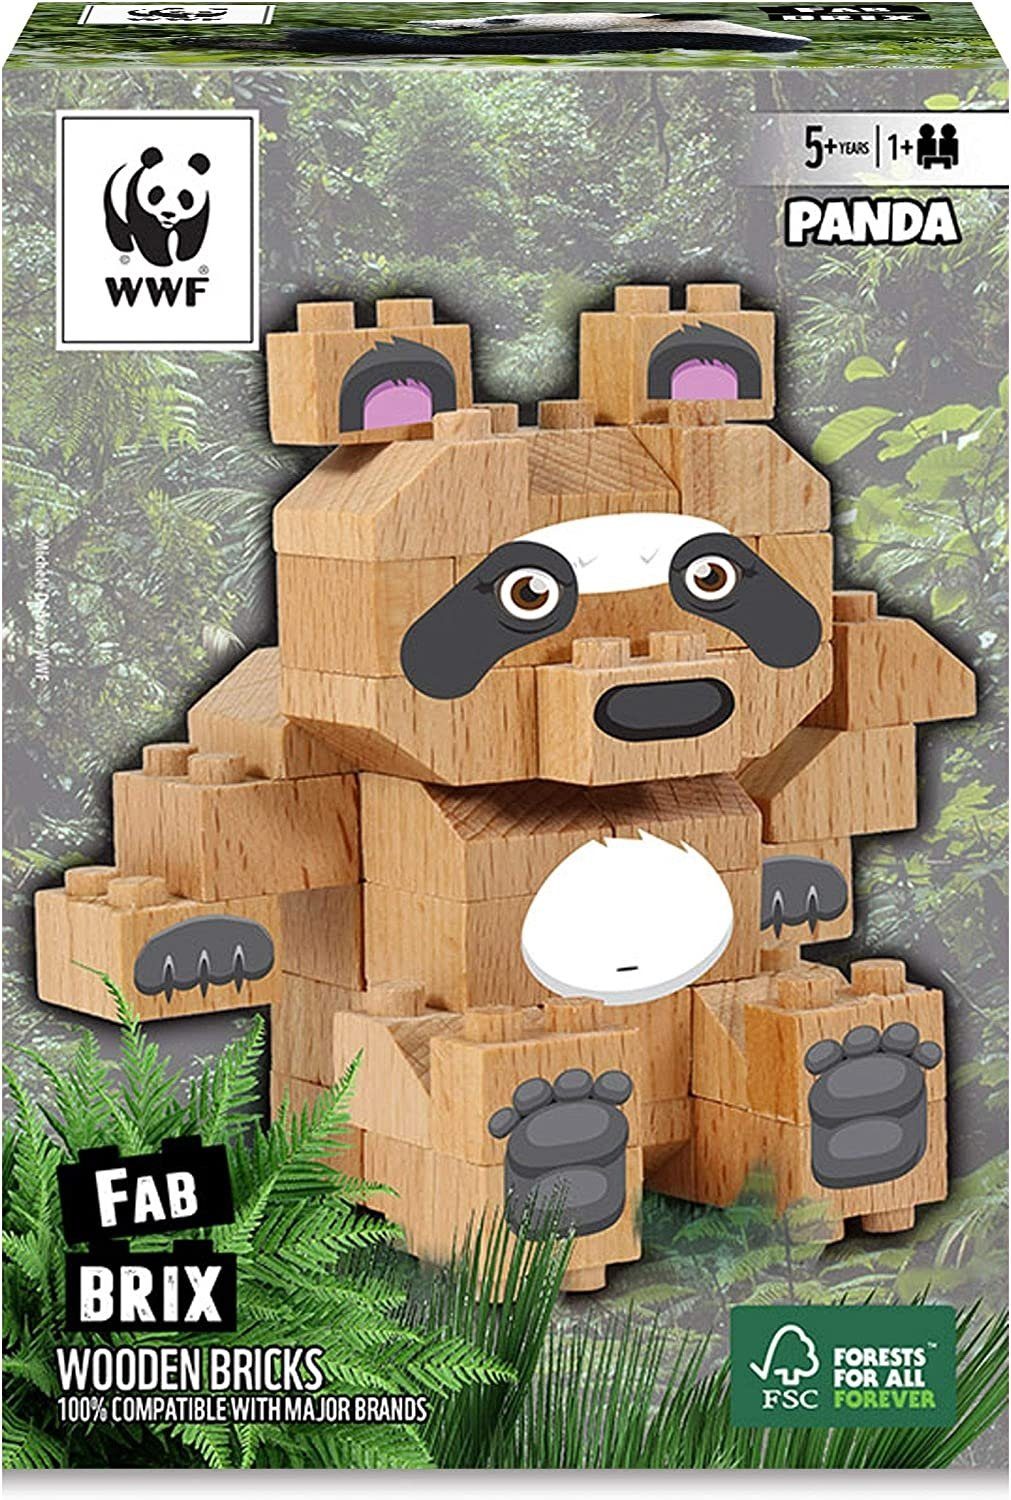 Bär Bausteinen WWF WWF konventionellen FabBrix mit Bricks PANDA Holzbausteine, Spielbausteine kompatibel Wooden 100%